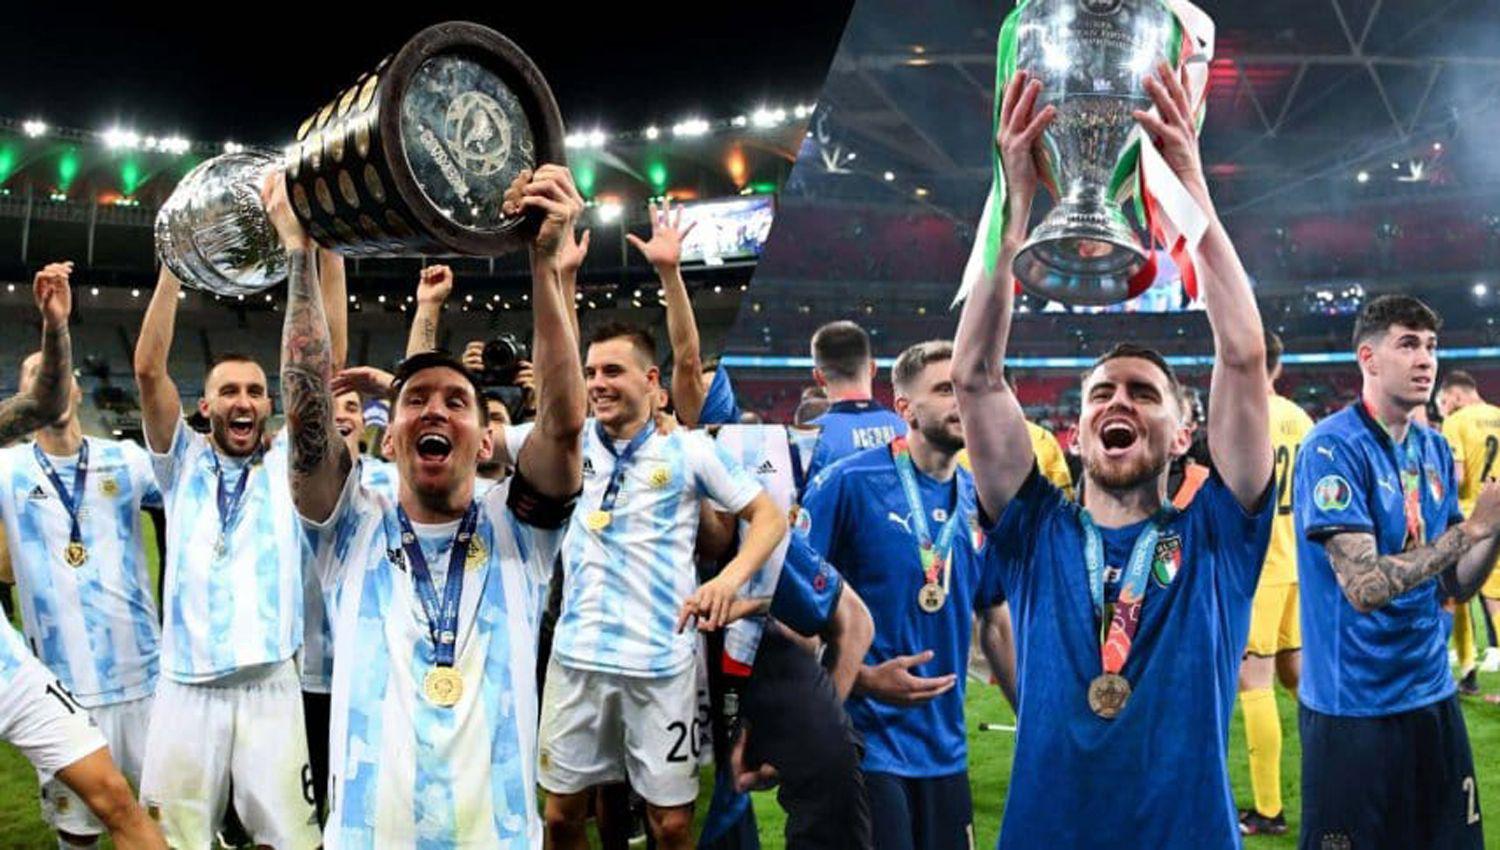 Confirmado- Habraacute duelo de campeones entre Argentina e Italia